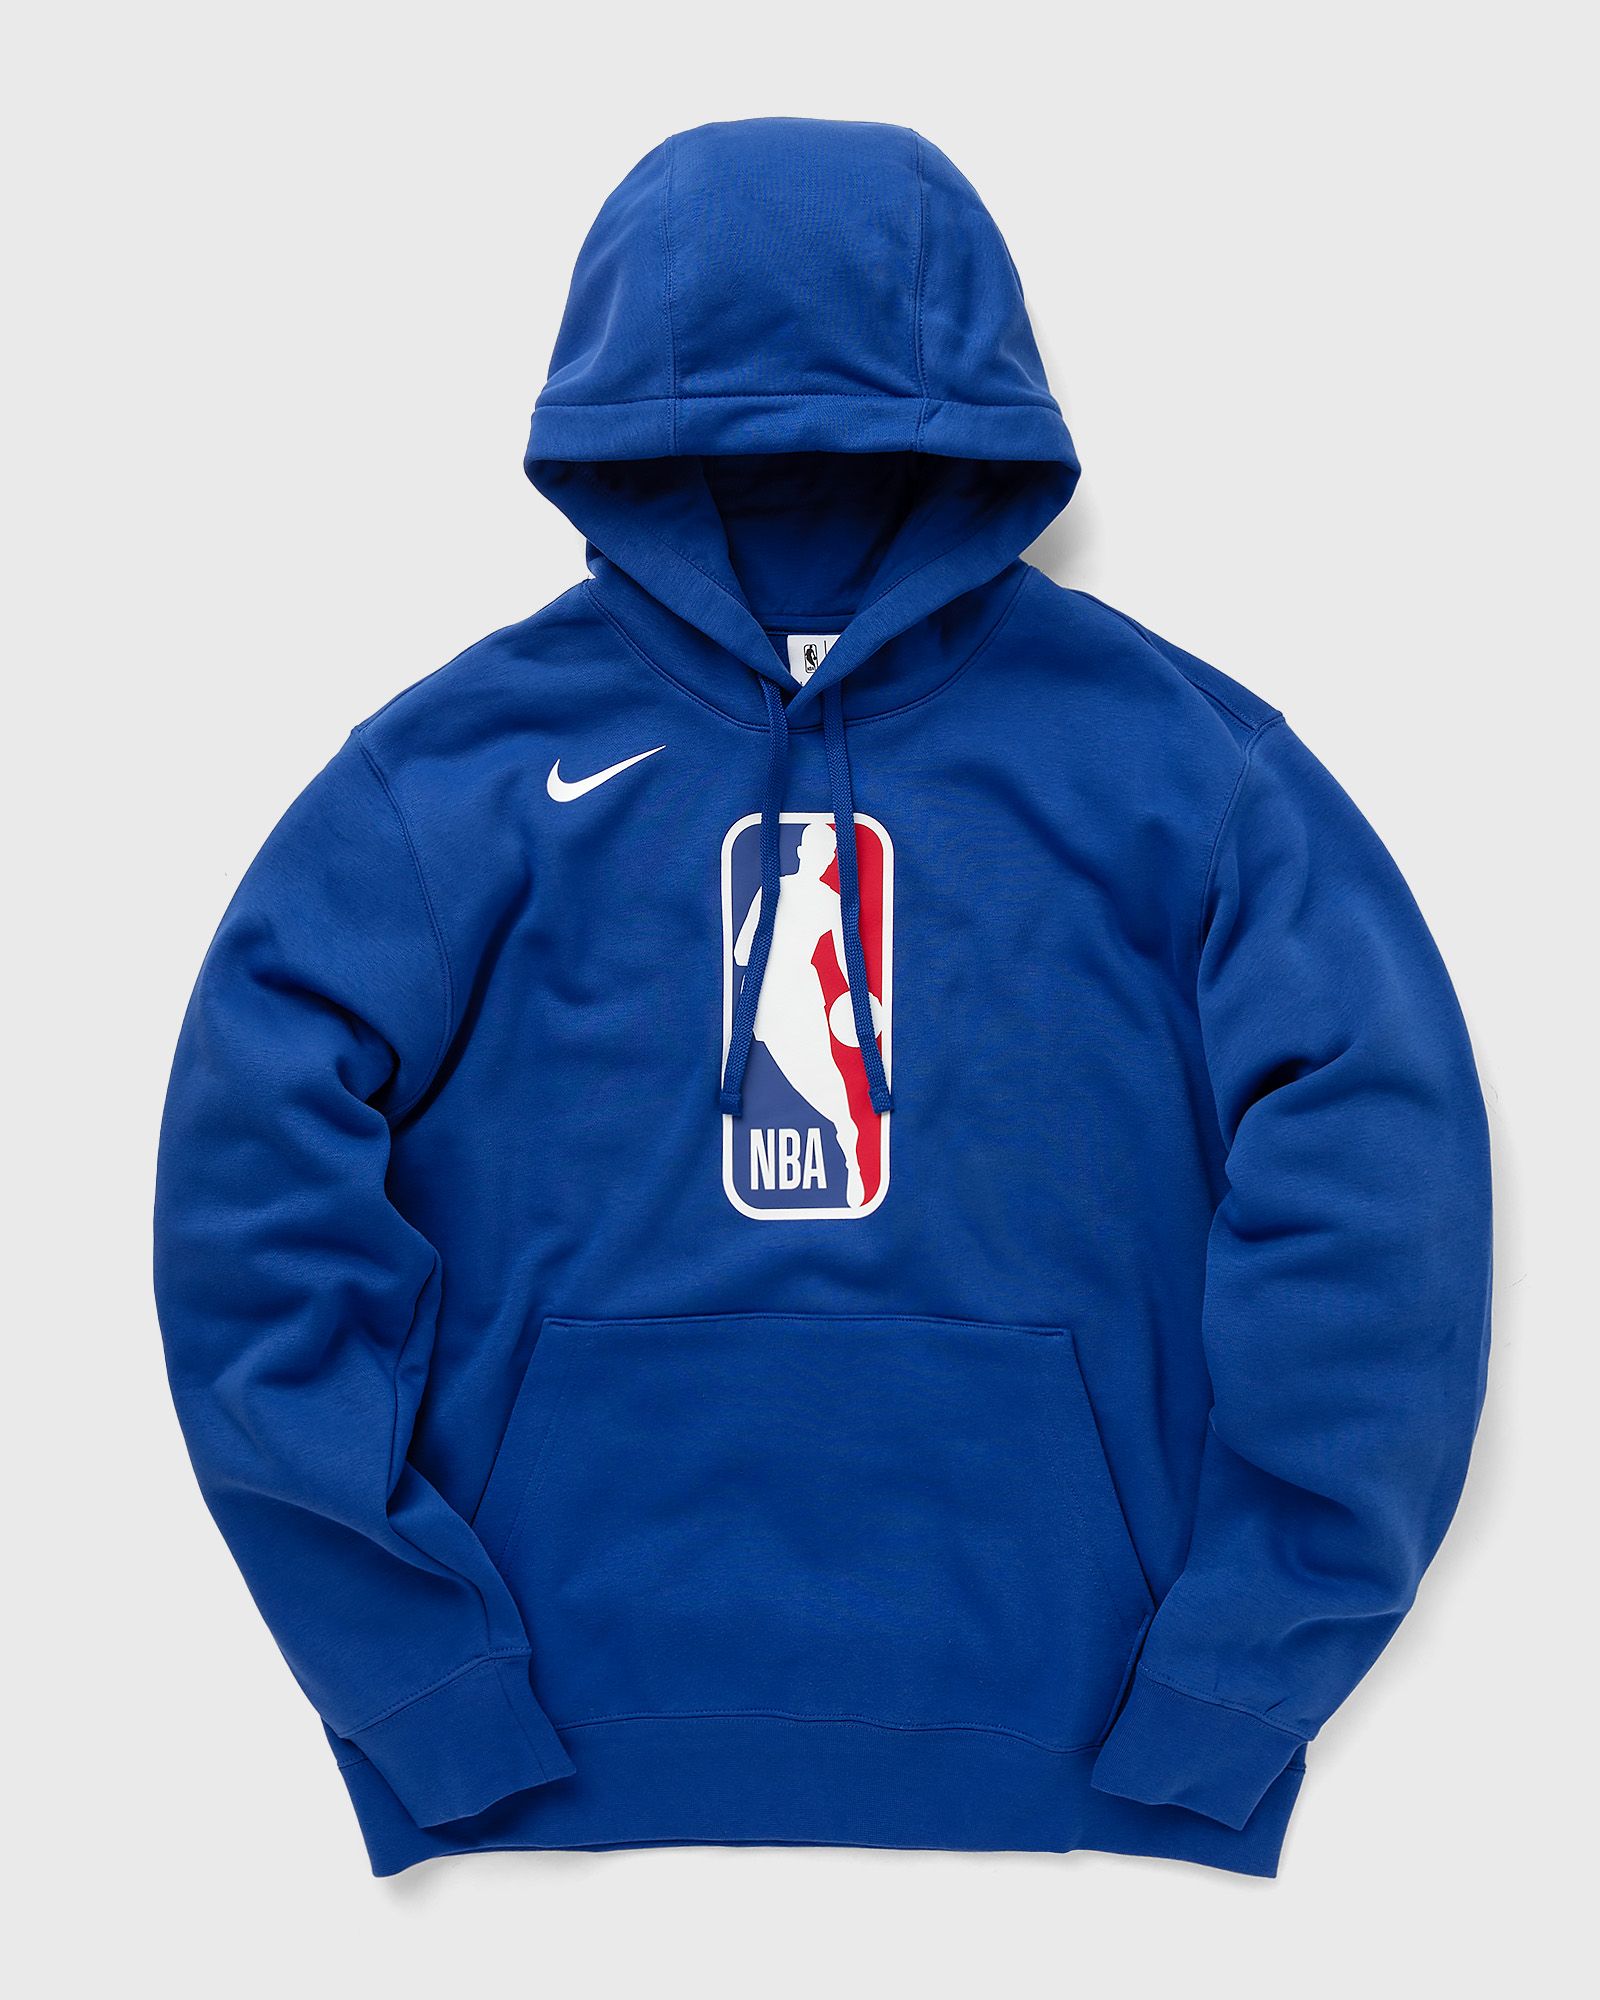 Nike - team 31 club fleece nba hoodie men hoodies blue in größe:m